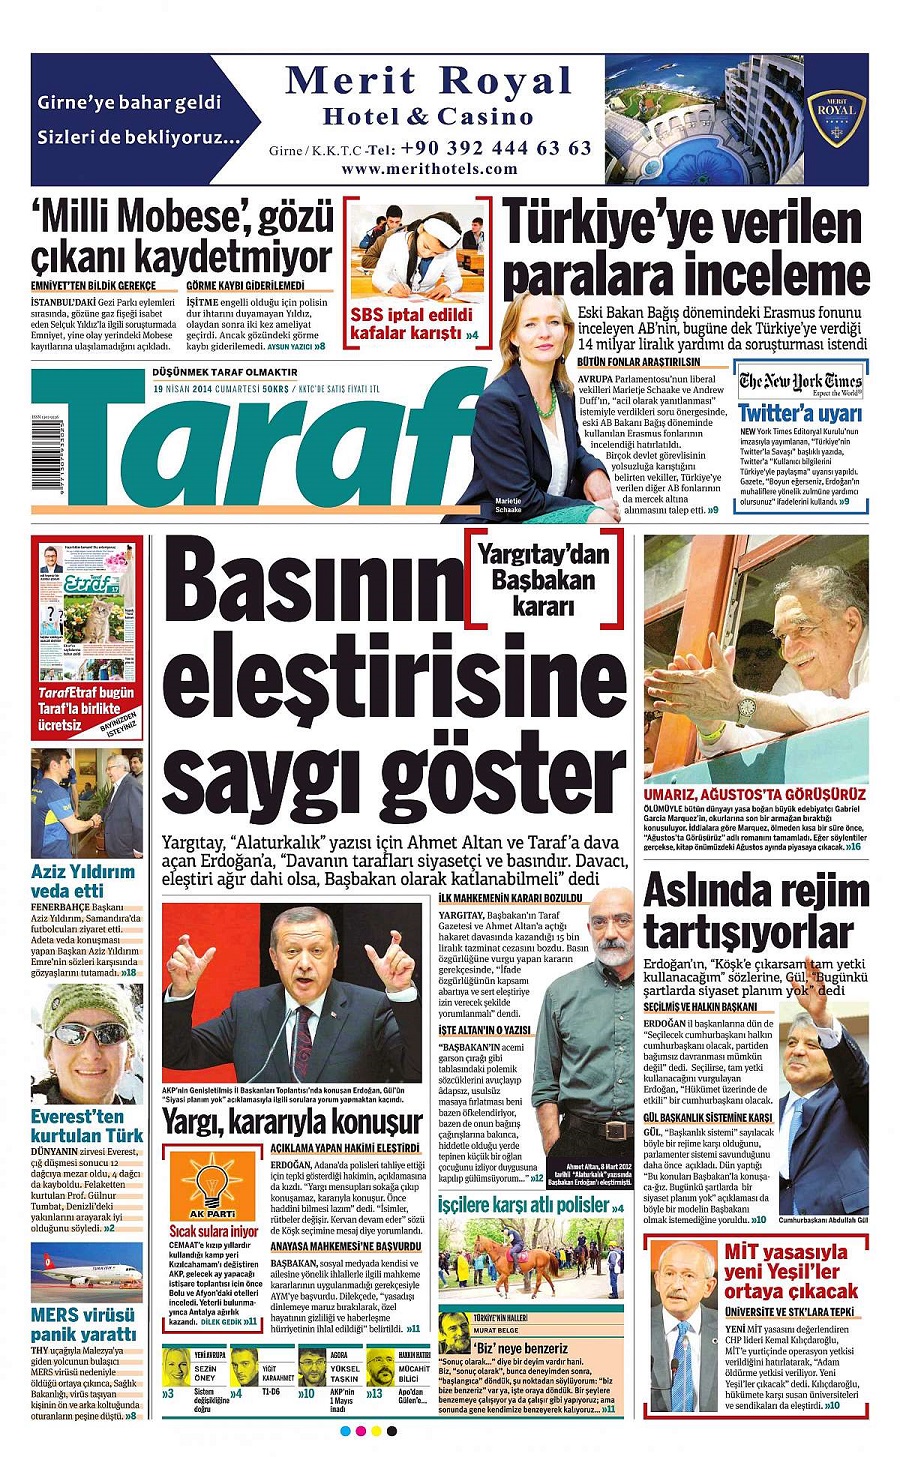 Yargıtay'ın Taraf ve Ahmet Altan kararı gazeteye manşet oldu